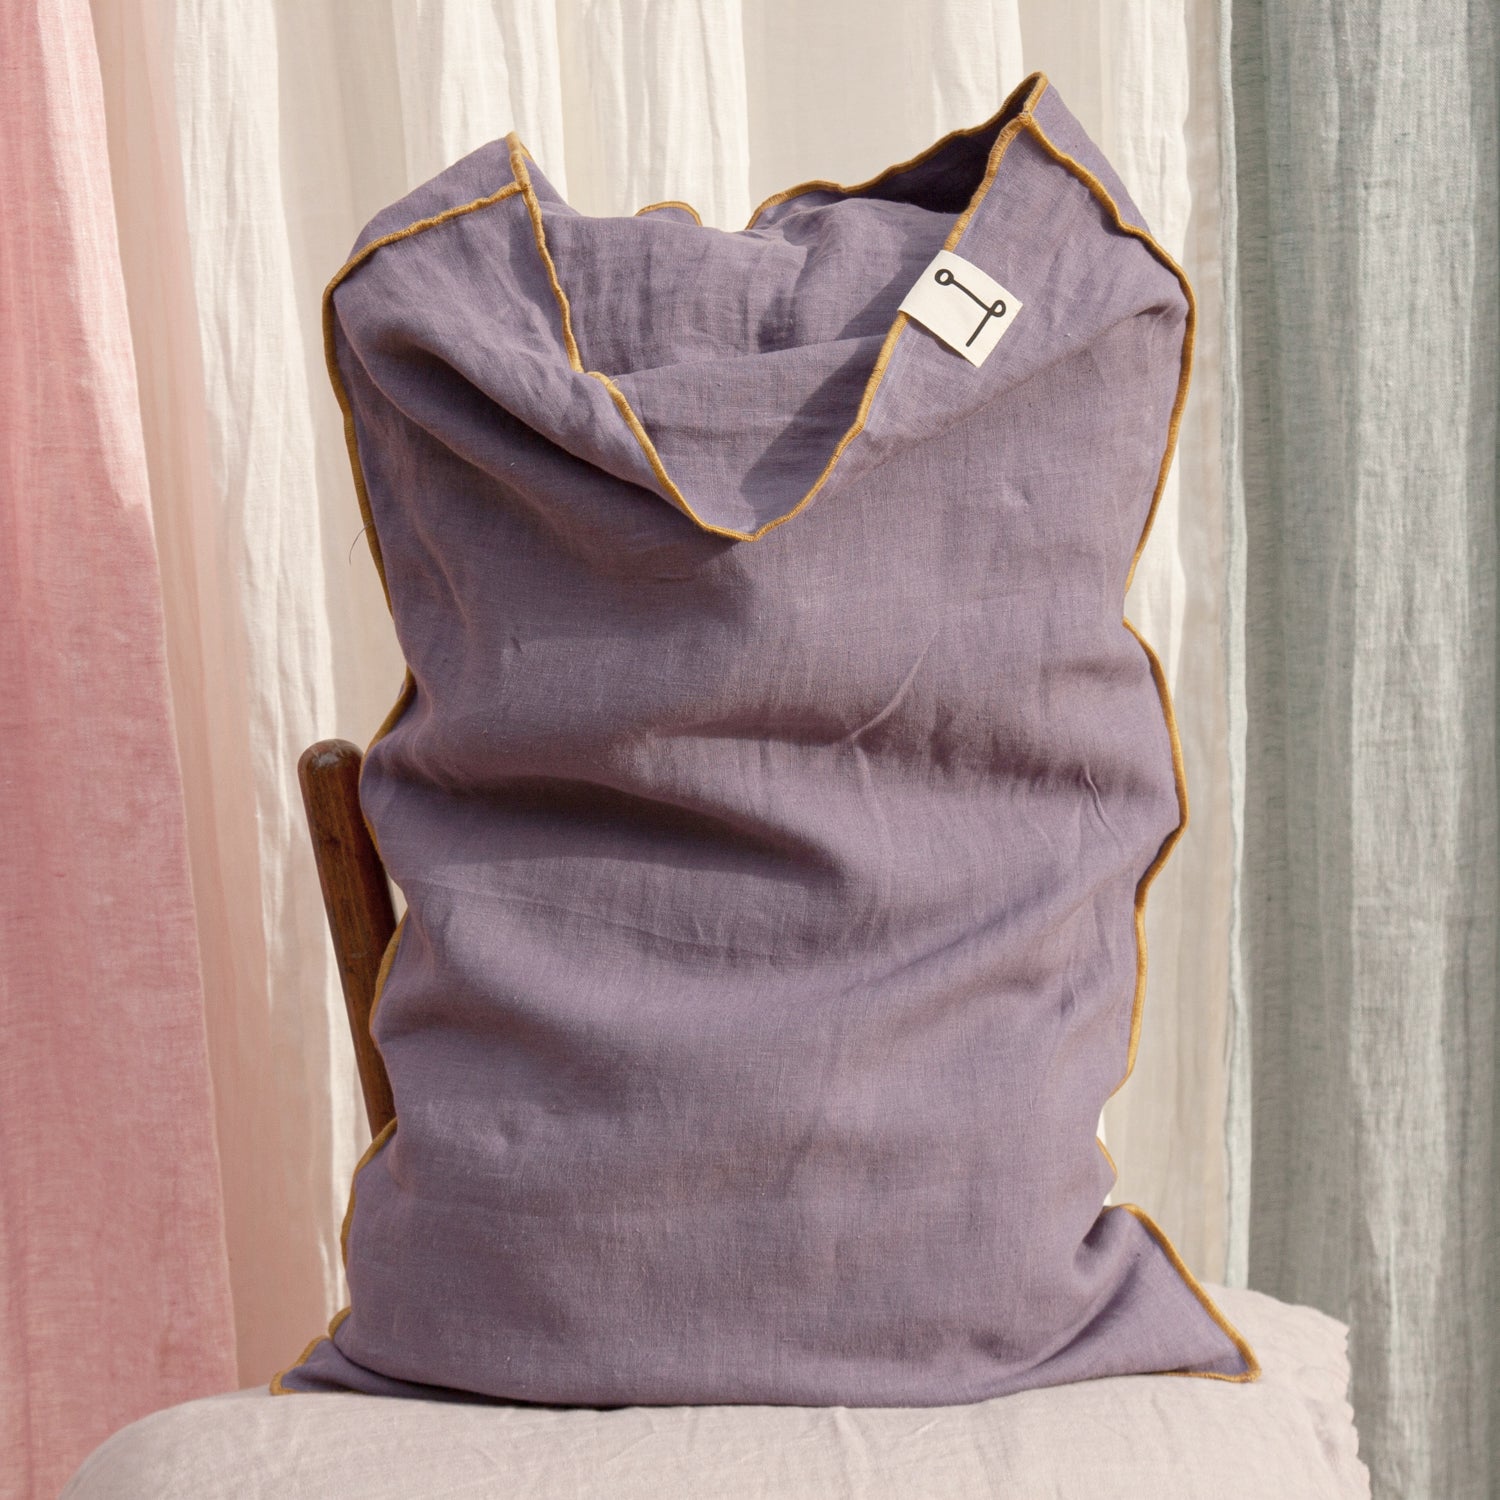 Funda de almohada de lino lila con vivo de color mostaza.